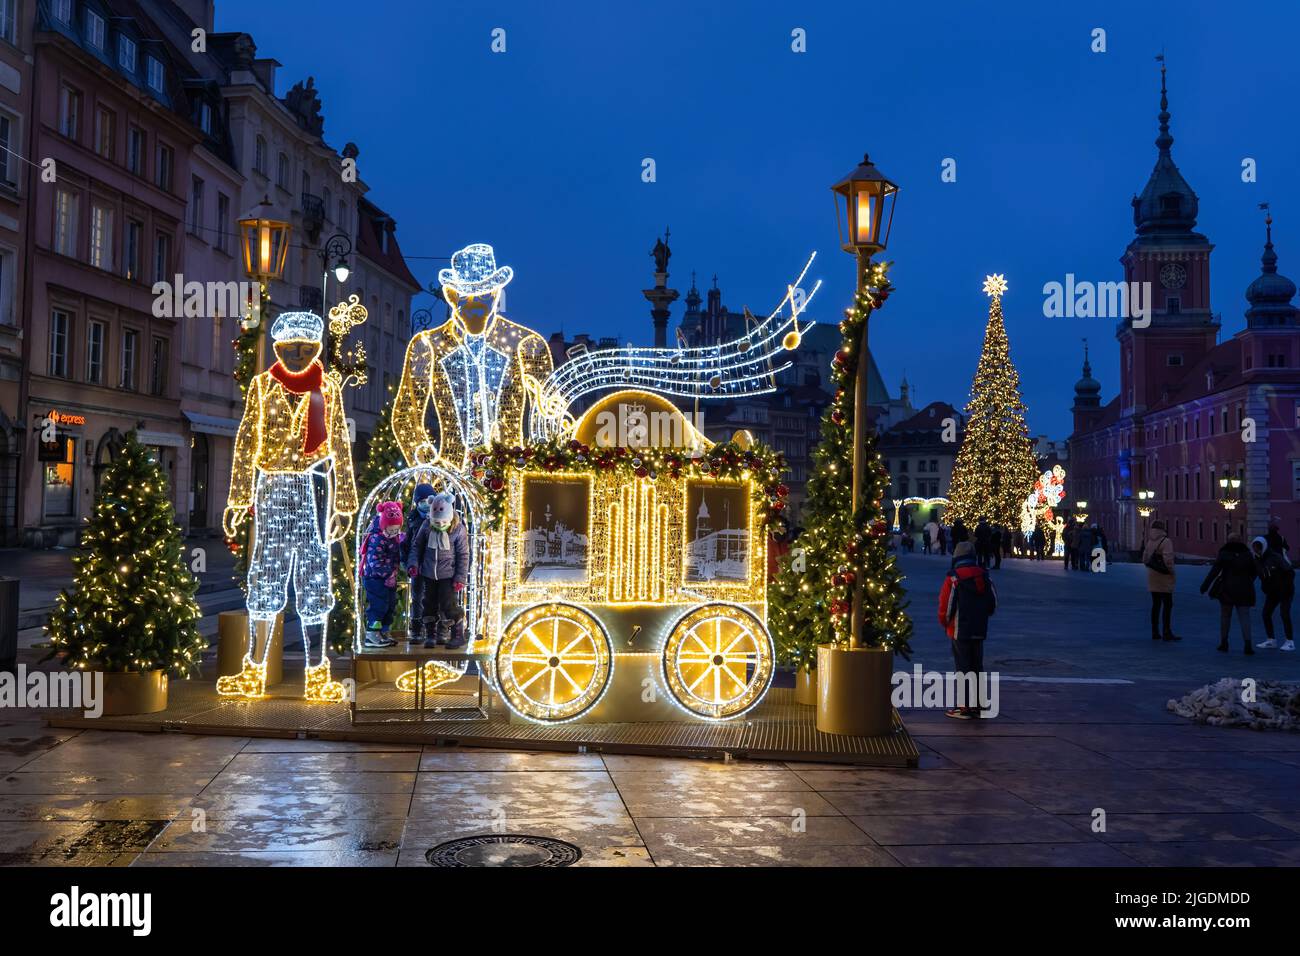 Vacances d'hiver installation éclairée la nuit avec place pour les enfants sur la place dans la vieille ville de Varsovie pendant Noël en Pologne. Banque D'Images